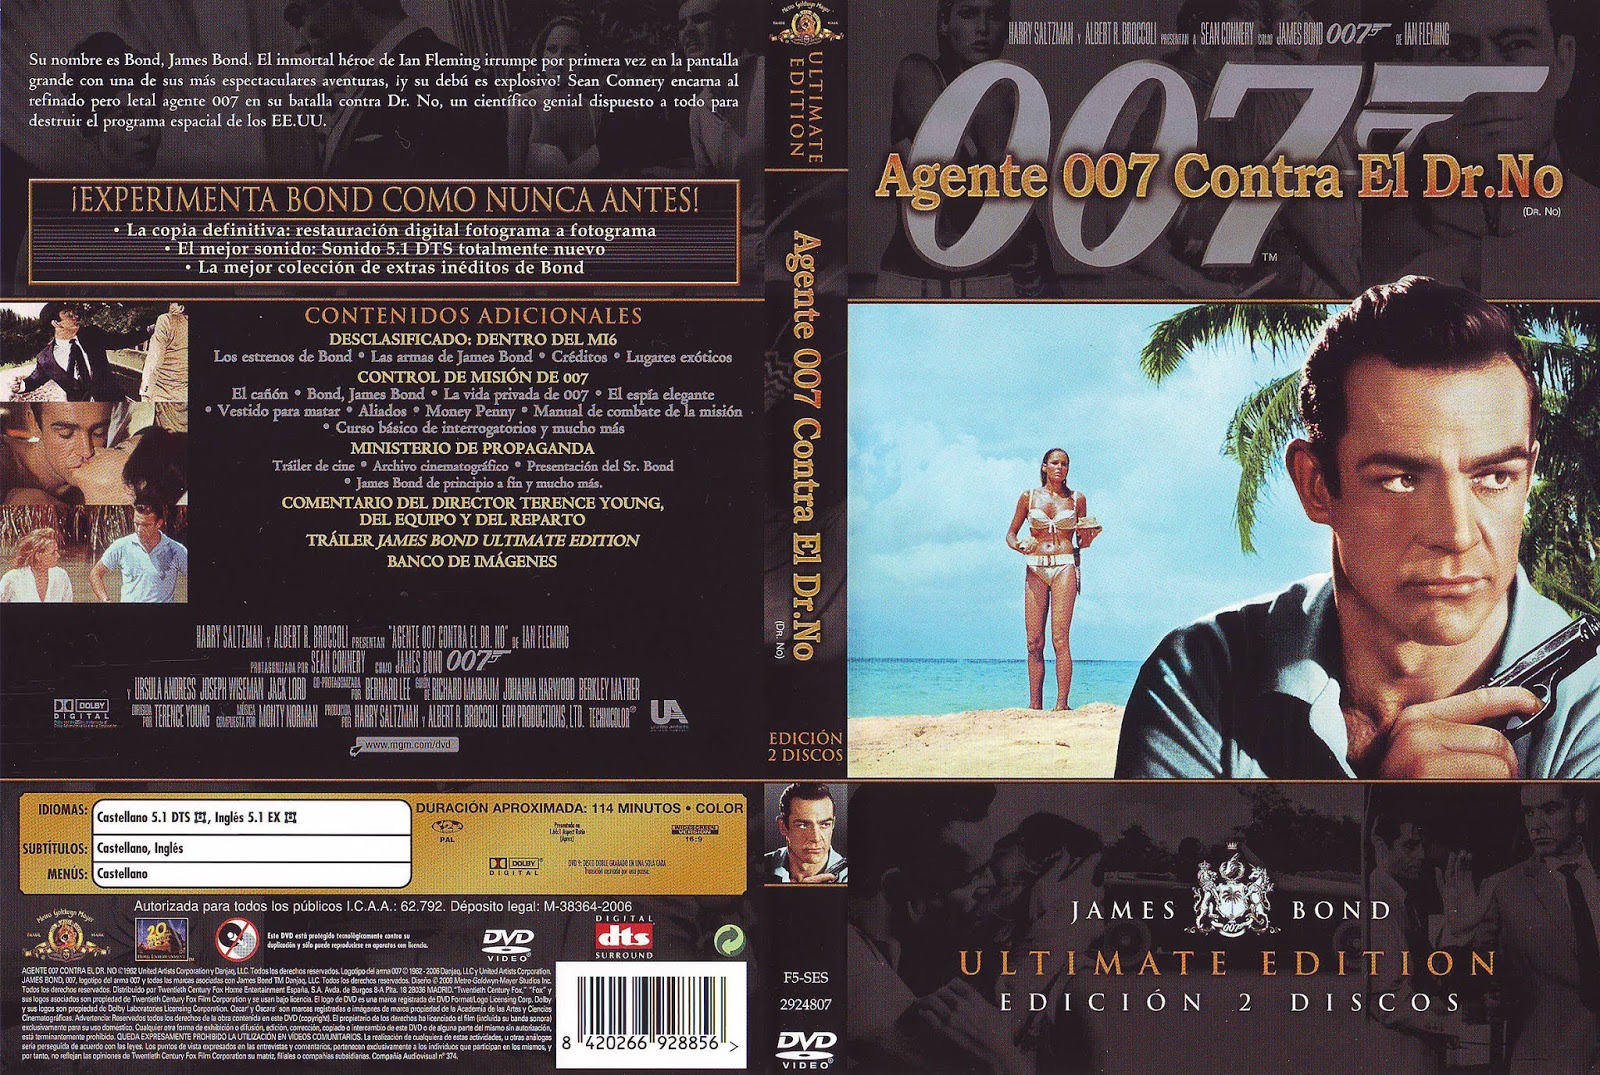 Caratulas Y Etiquetas Agente 007 Contra El Dr No